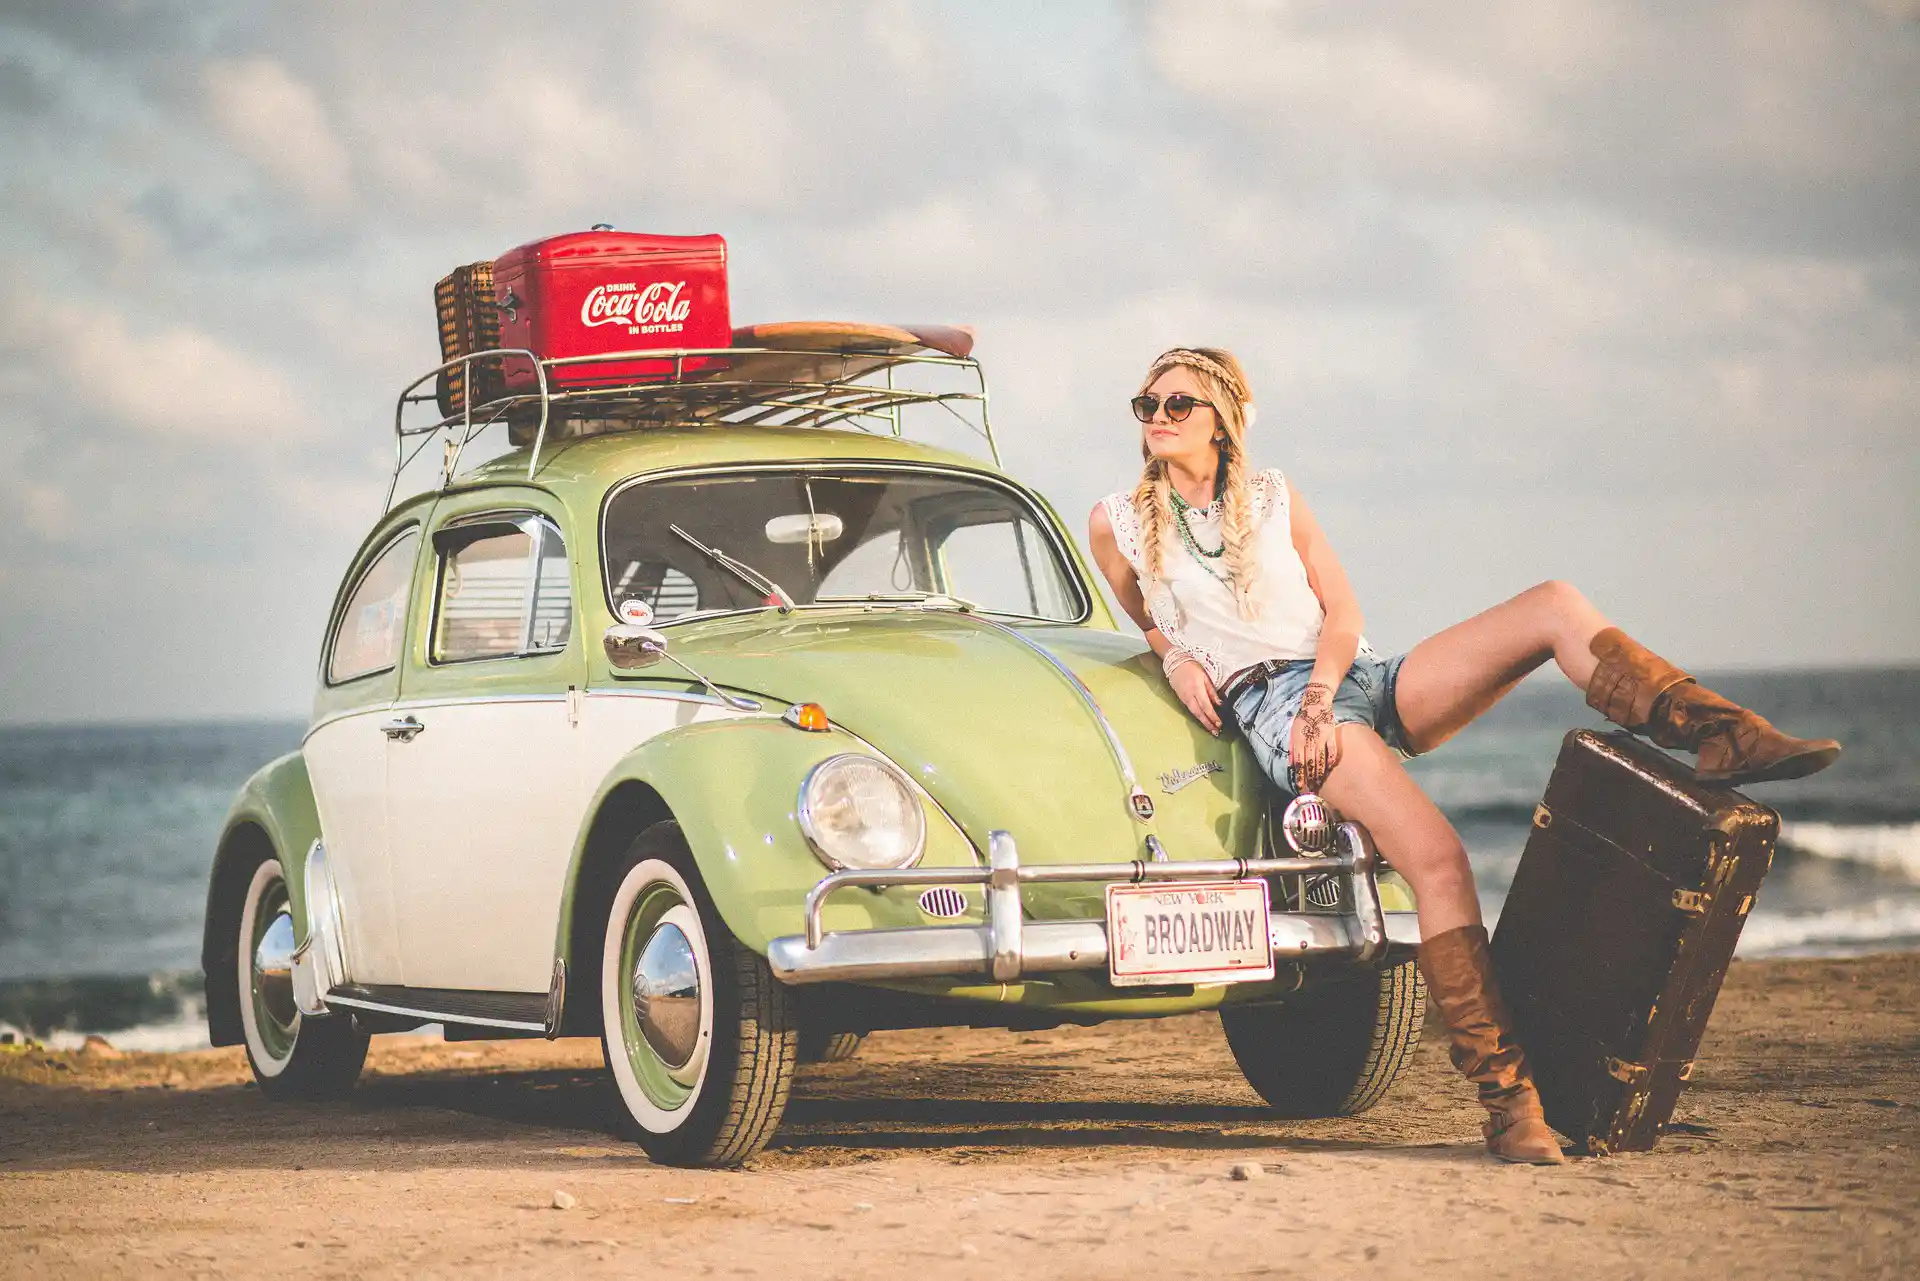 Nell'immagine, una ragazza bionda con le trecce appoggiata ad una macchina verde parcheggiata su una spiaggia. Sullo sfondo, si vede il mare. La ragazza ha una gamba appoggiata su una valigia, altre valigie sono impilate sul tettuccio della macchina.